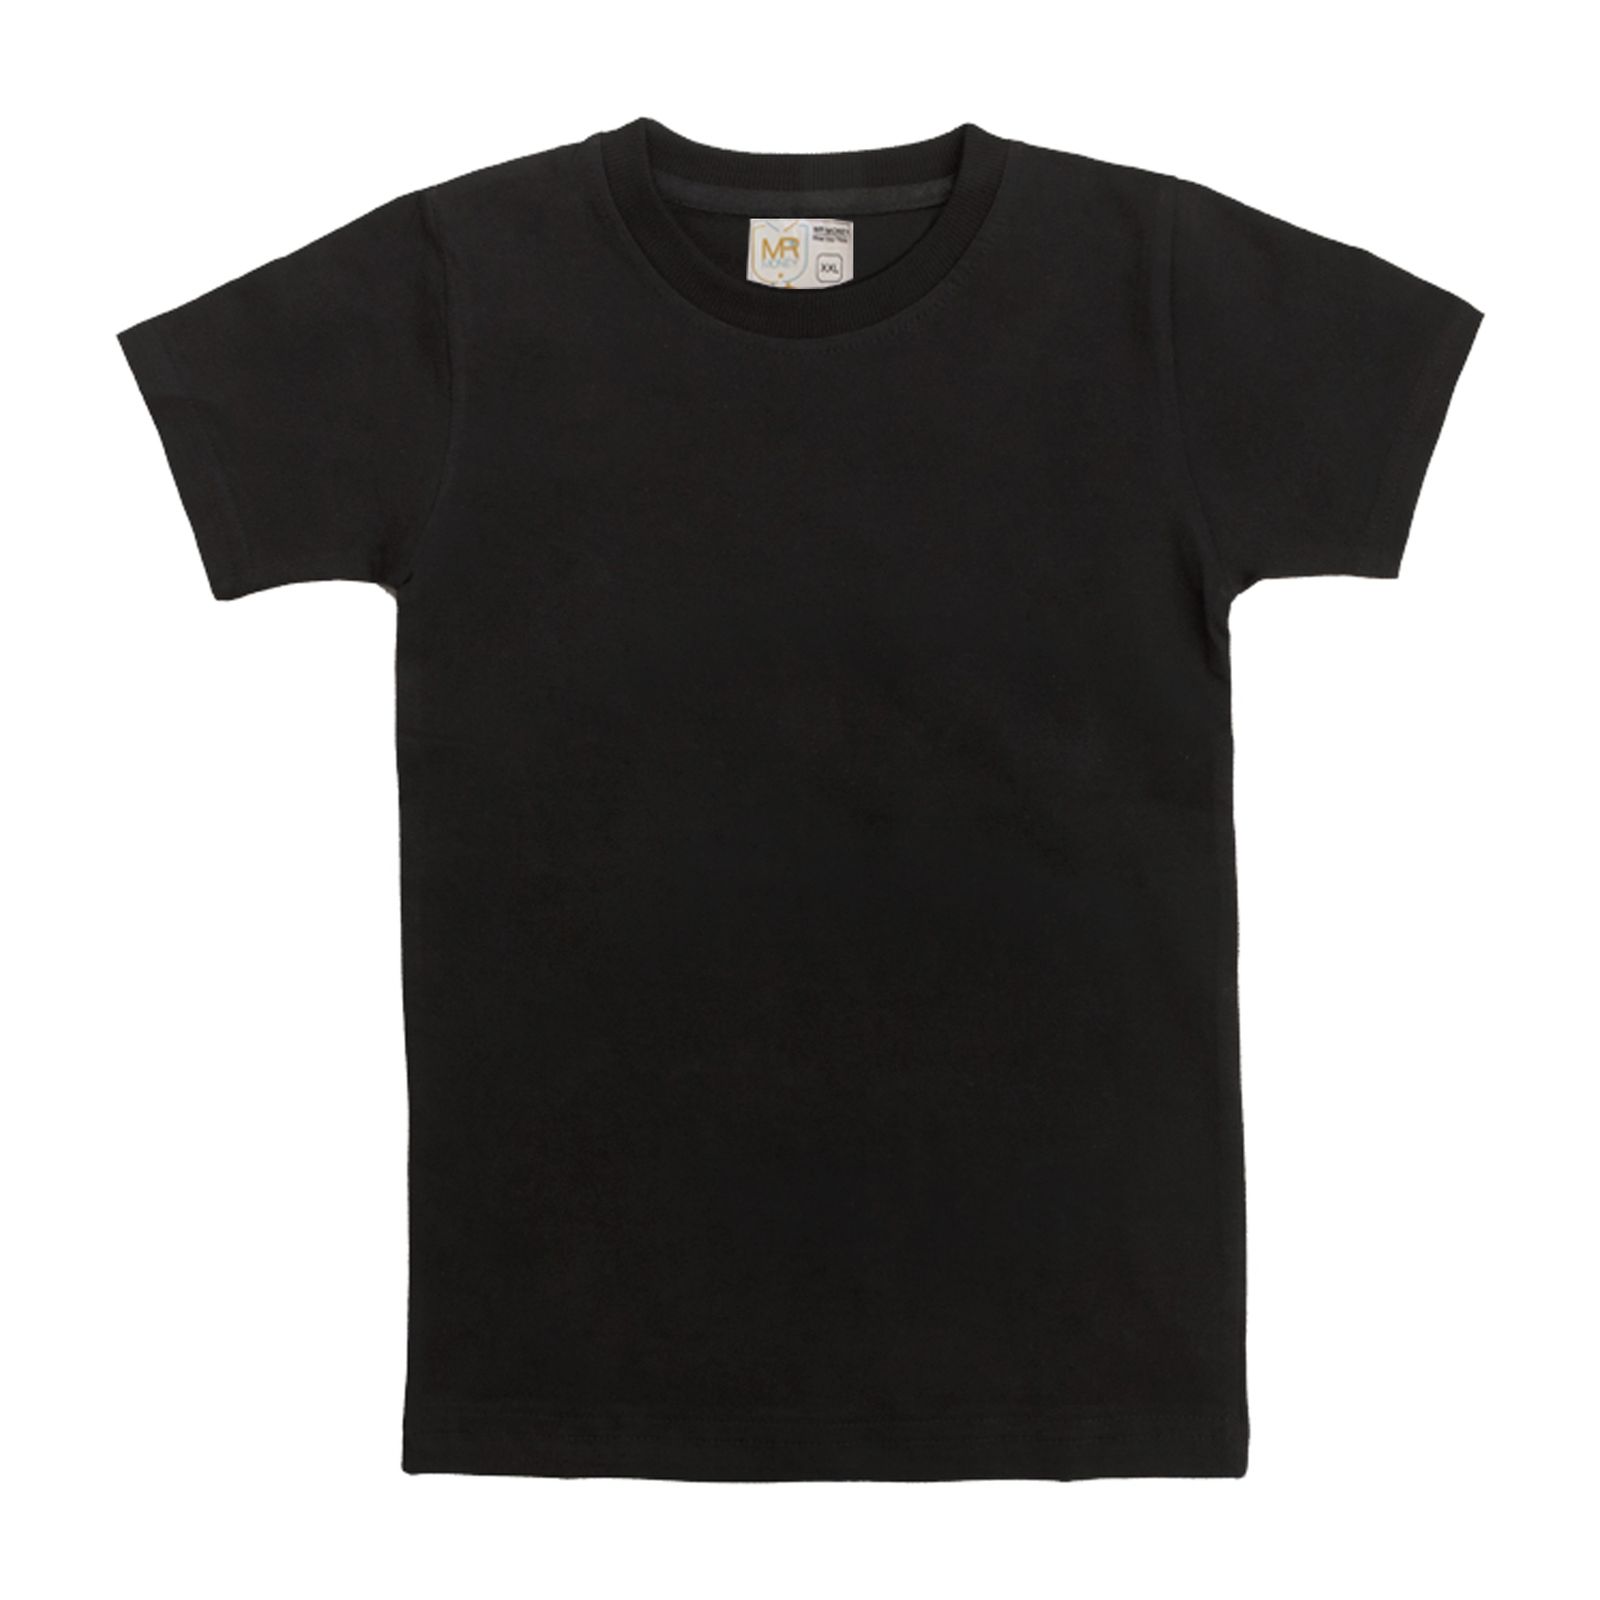 تی شرت آستین کوتاه بچگانه مسترمانی مدل ساده 401 -  - 1